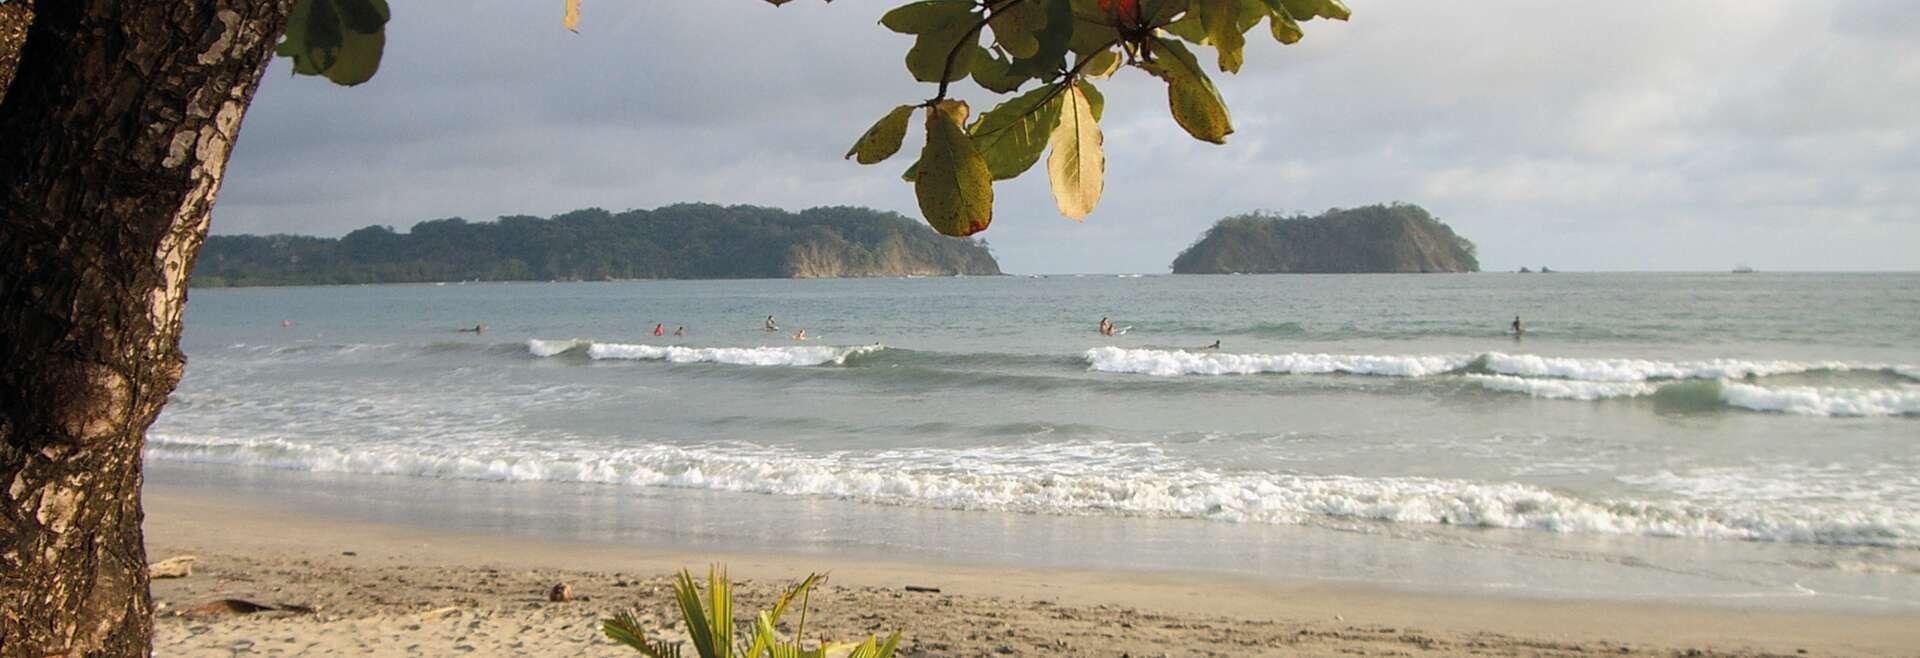 Séjour linguistique Costa Rica, Samara - plage